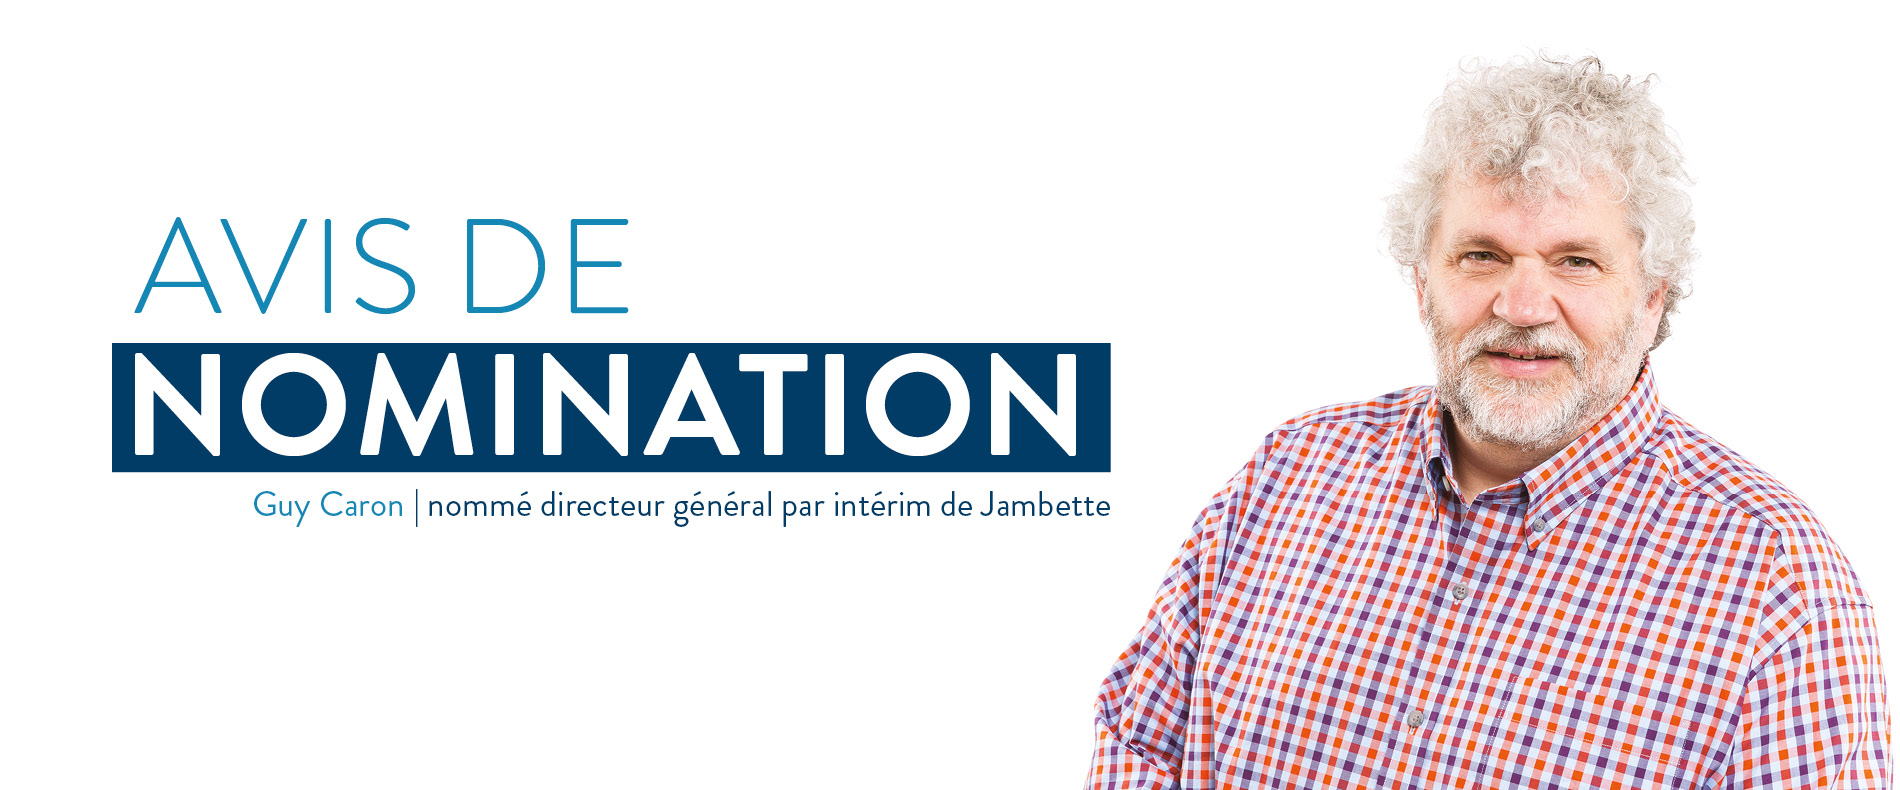 Avis de nomination de Guy Caron comme directeur général par intérim de Jambette